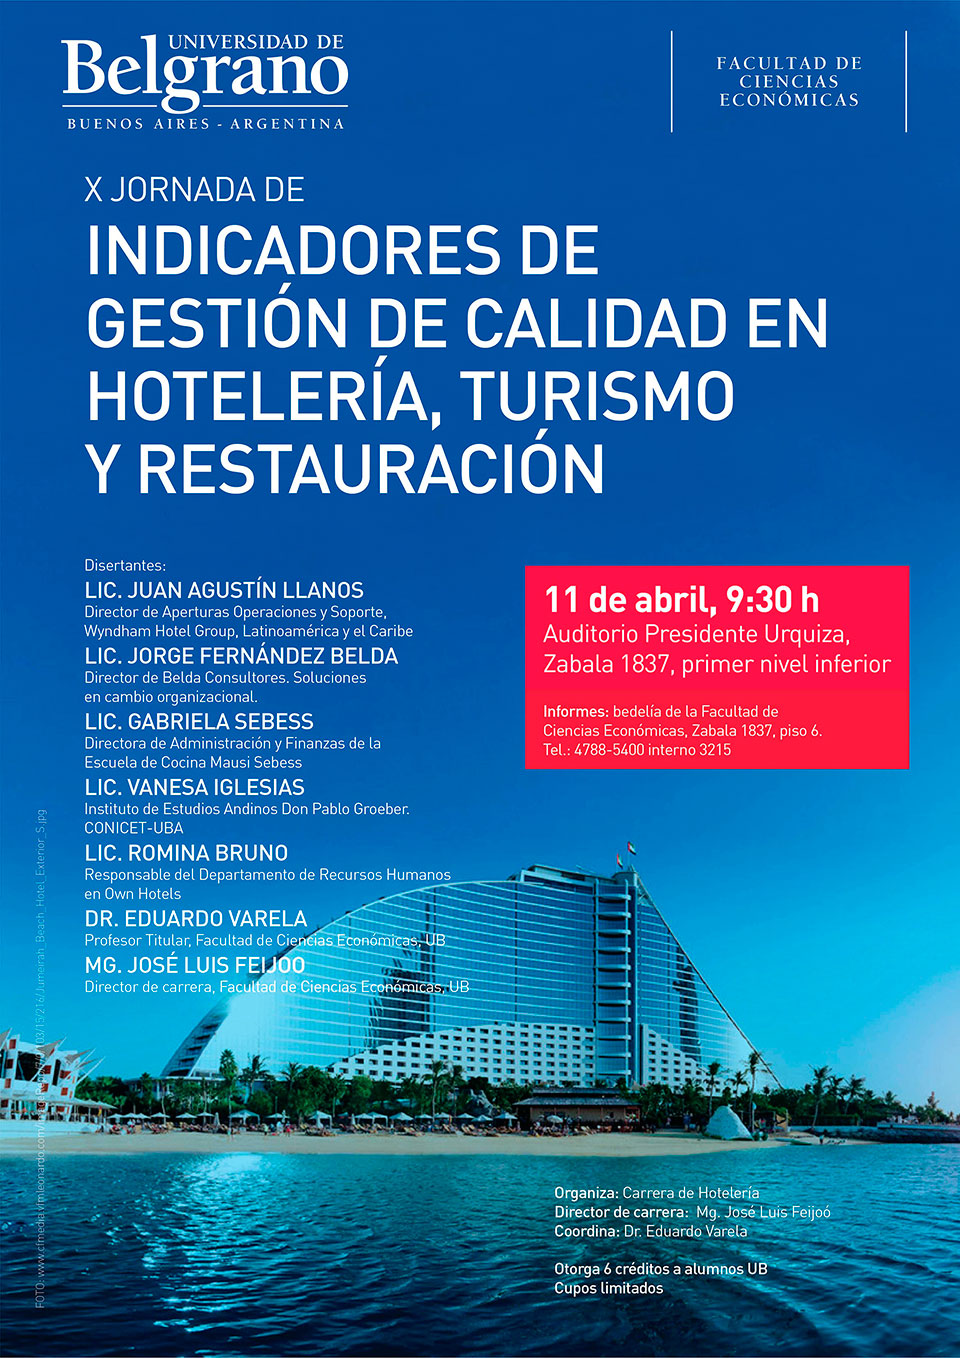 X Jornada de Indicadores de Gestión de Calidad en Hotelería, Turismo y Restauración